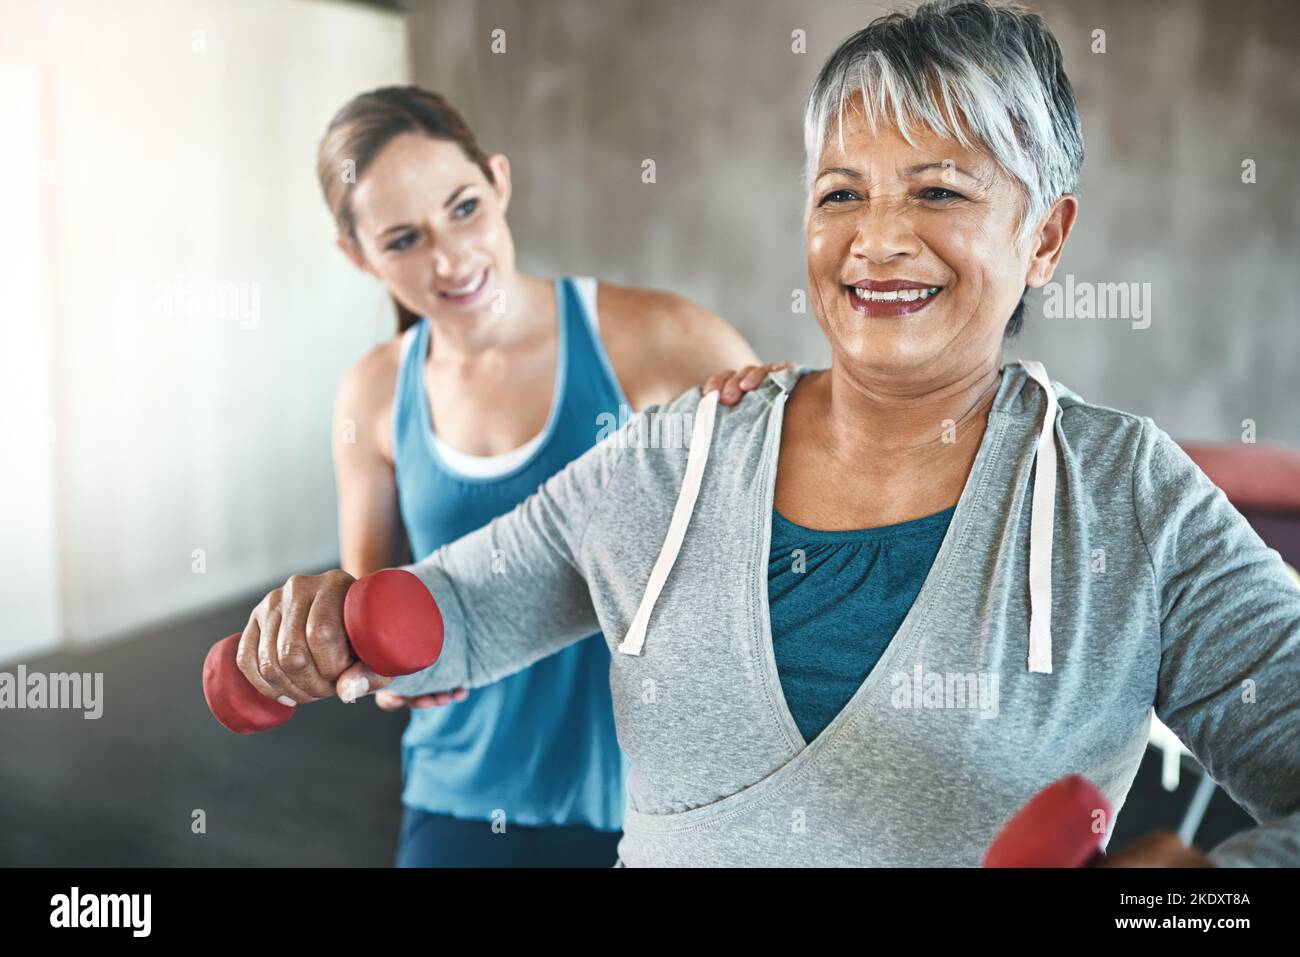 Fühlen Sie Ihr Bestes in jedem Alter mit regelmäßiger Bewegung. Eine ältere Frau mit Gewichten mit Hilfe eines Physiotherapeuten. Stockfoto